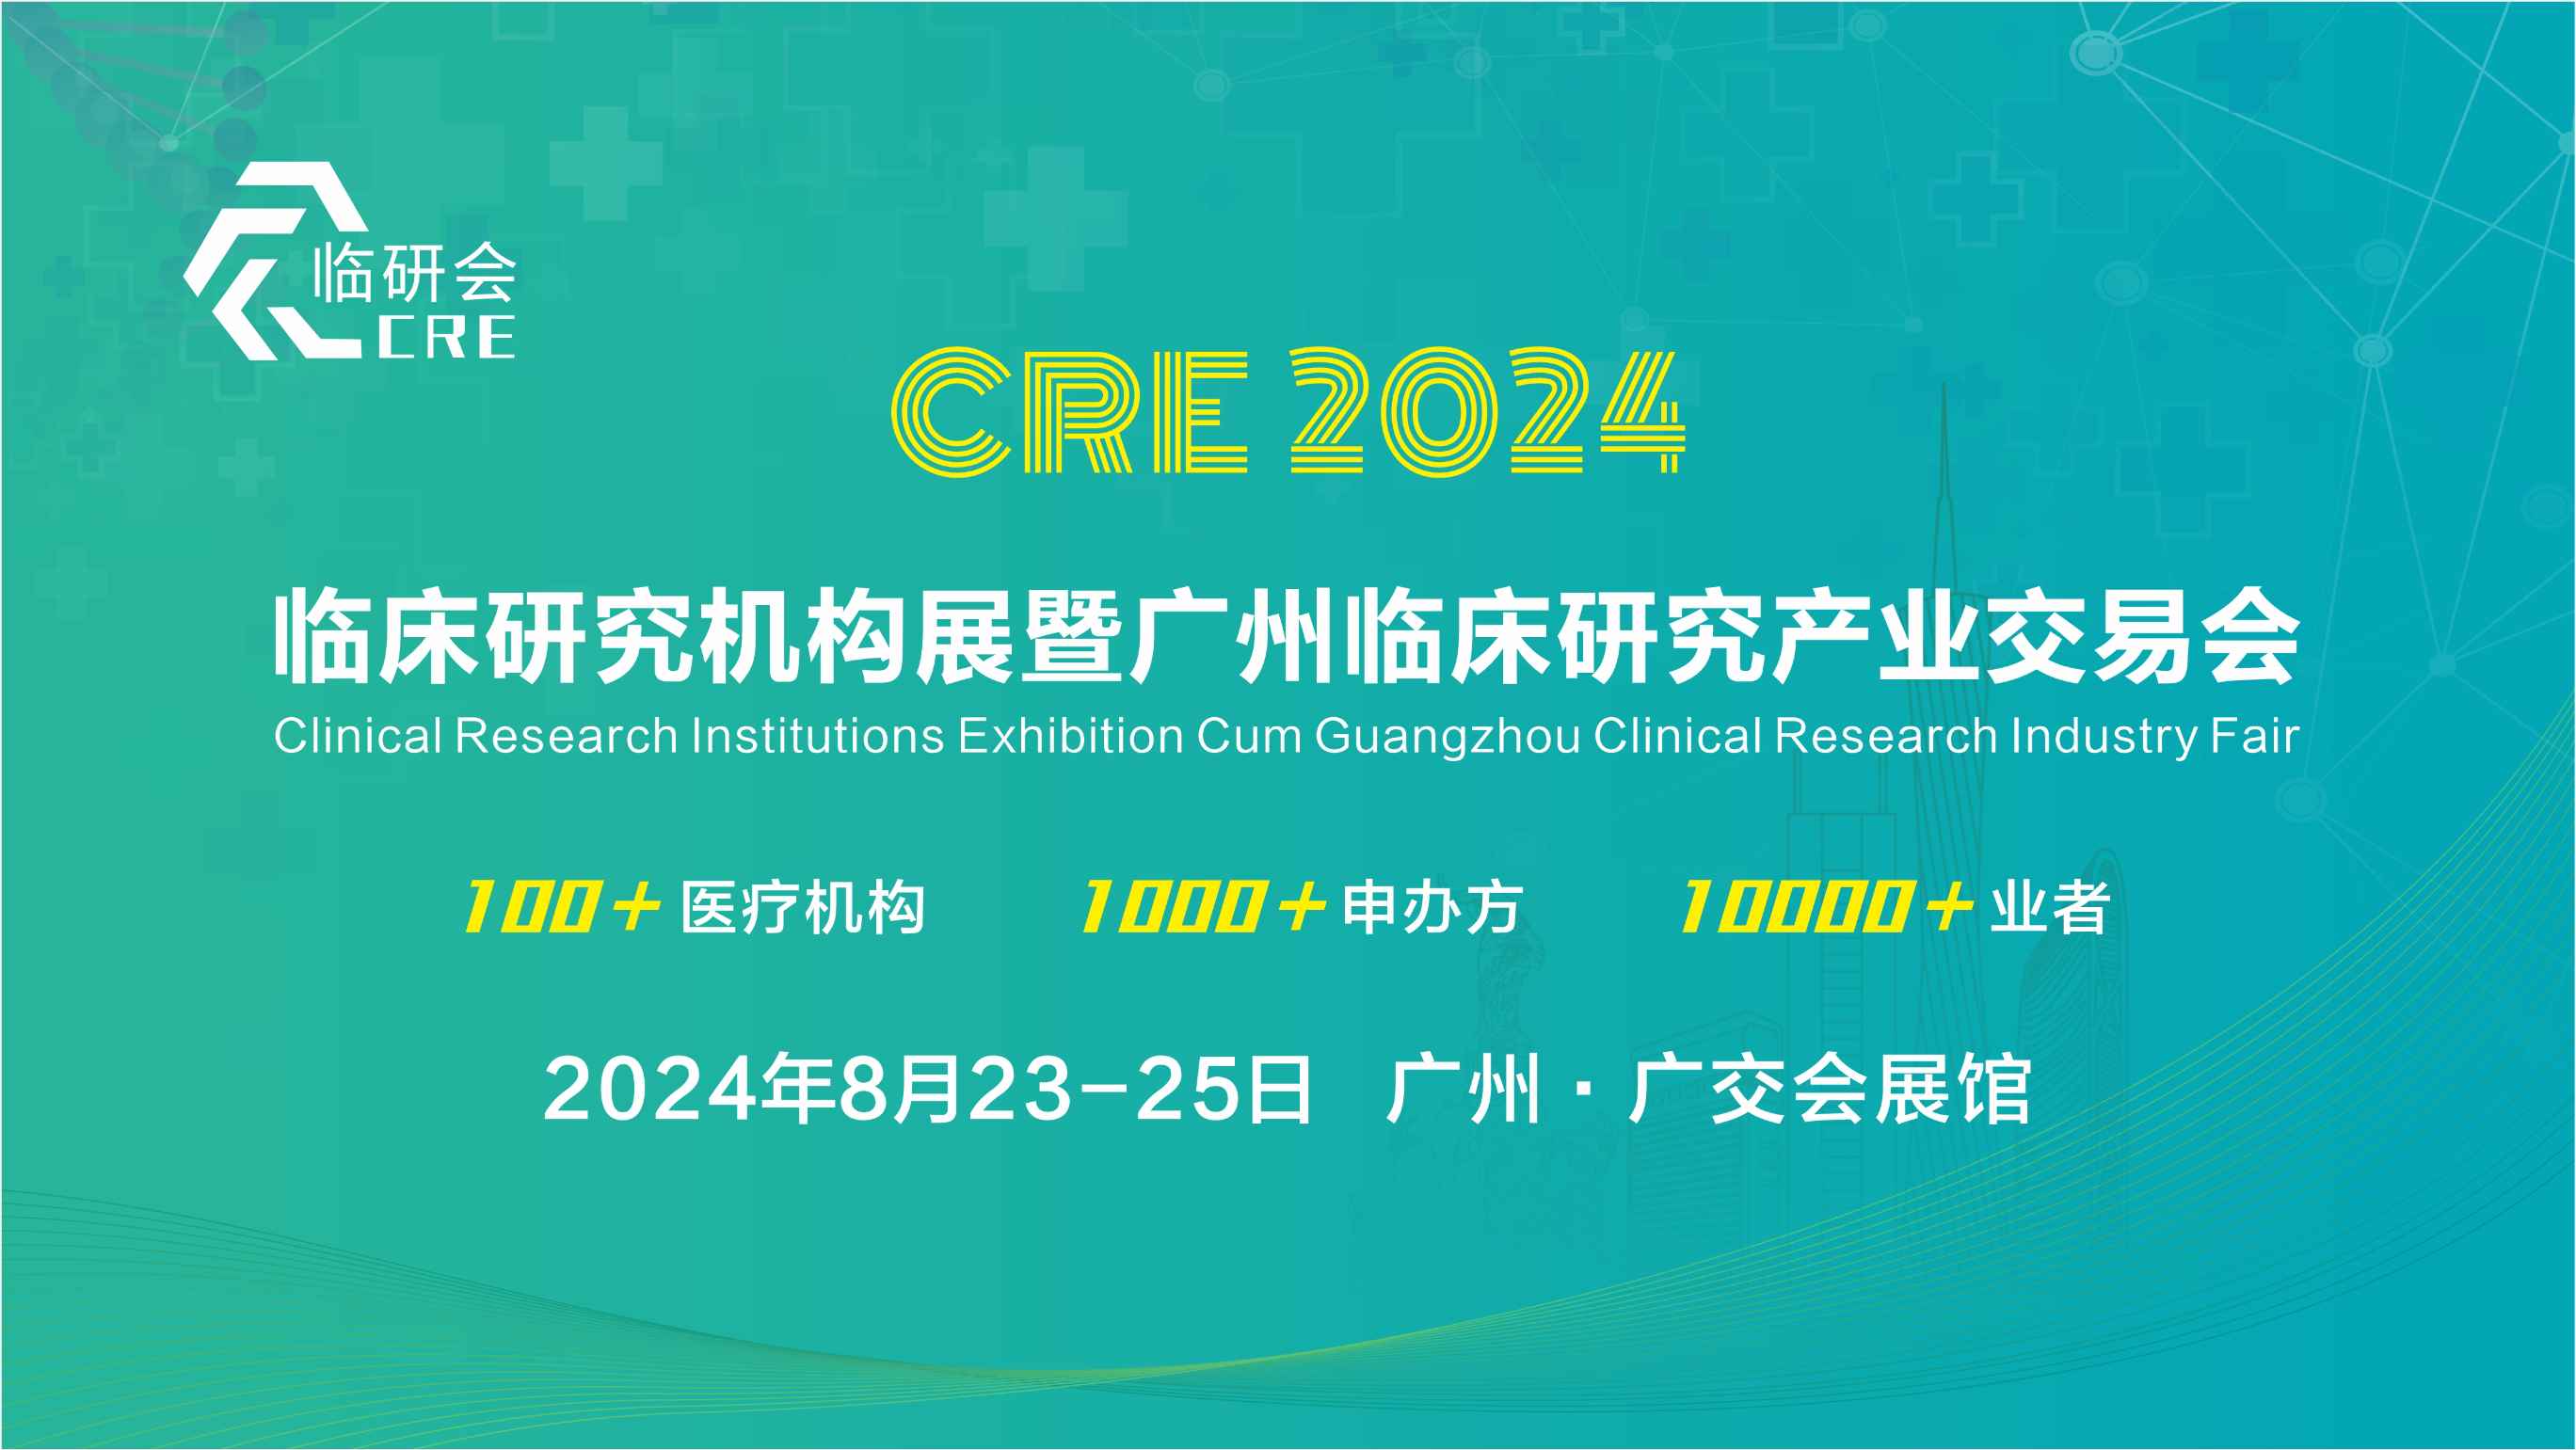 2024第二届临床研究机构展暨广州临床研究产业交易会